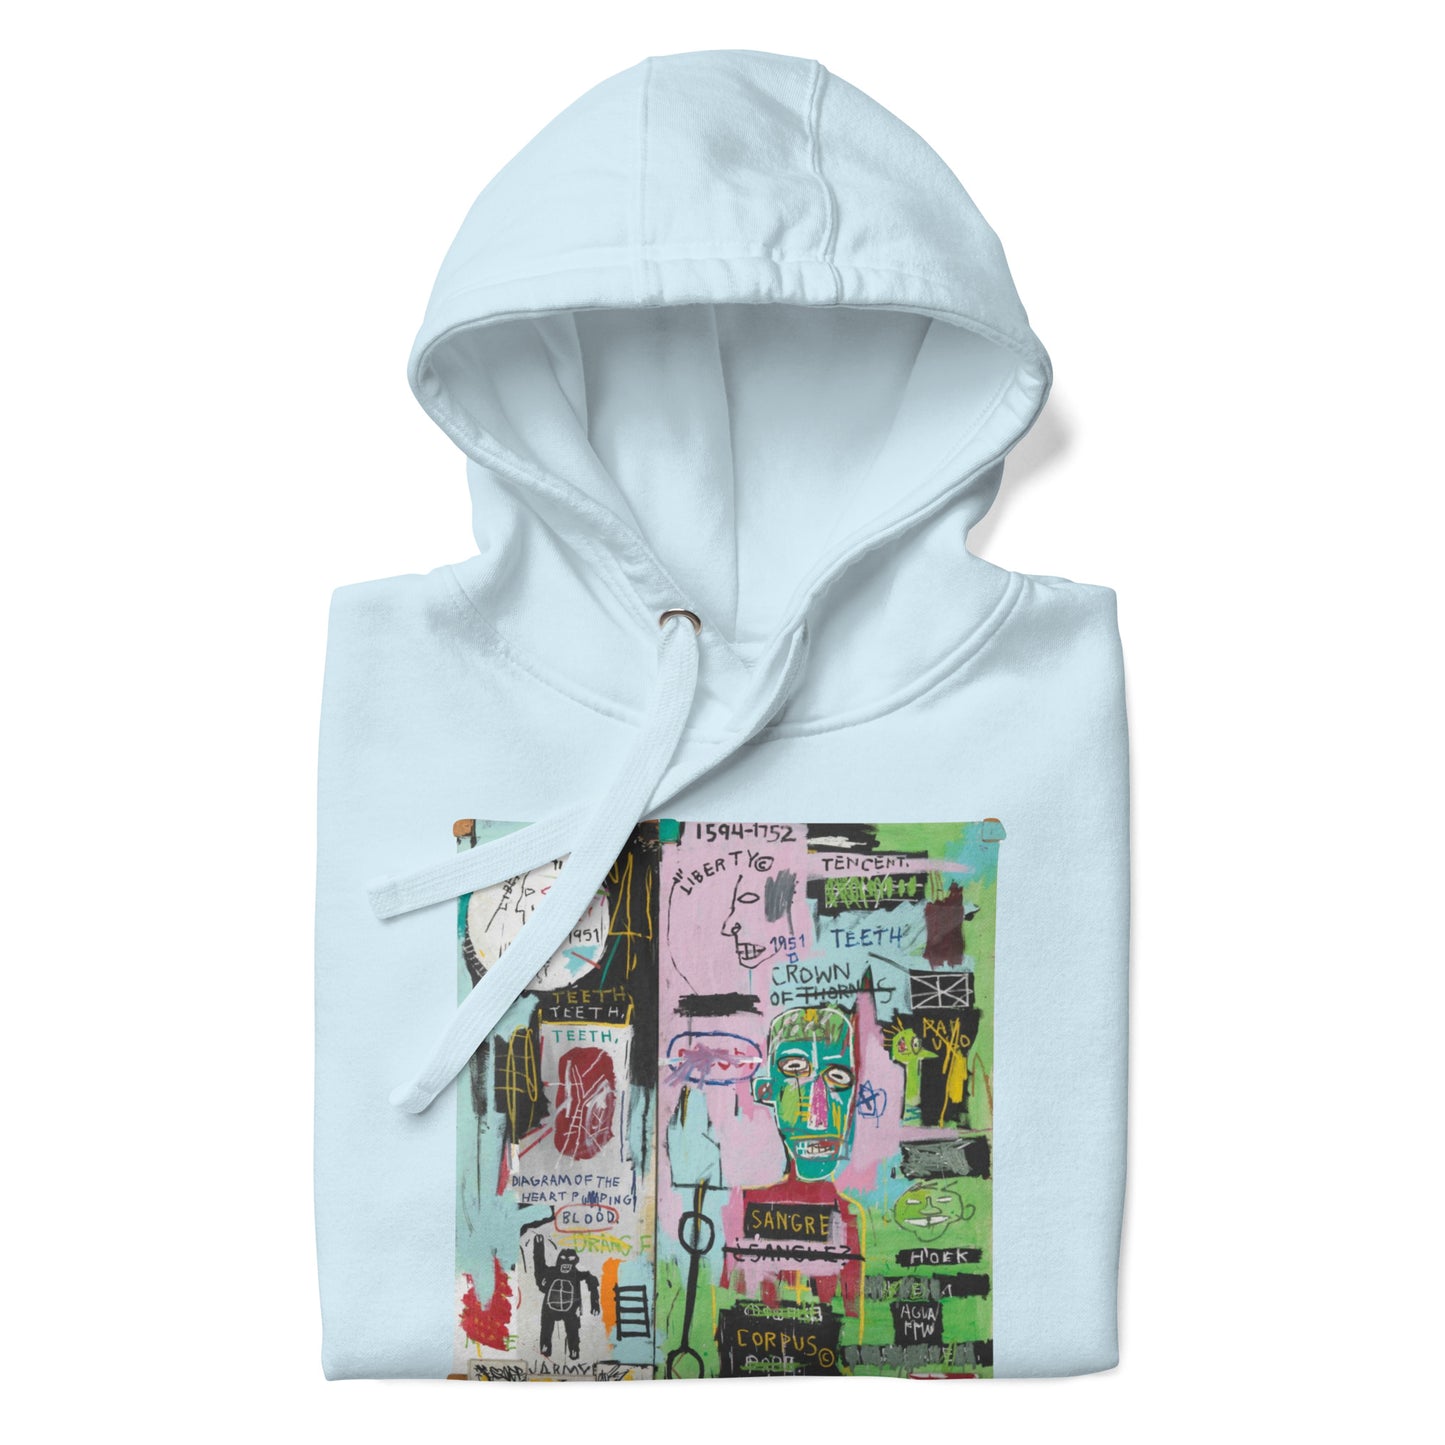 Jean-Michel Basquiat "In Italian" Artwork Printed Premium Streetwear Sweatshirt Hoodie Ice Blue